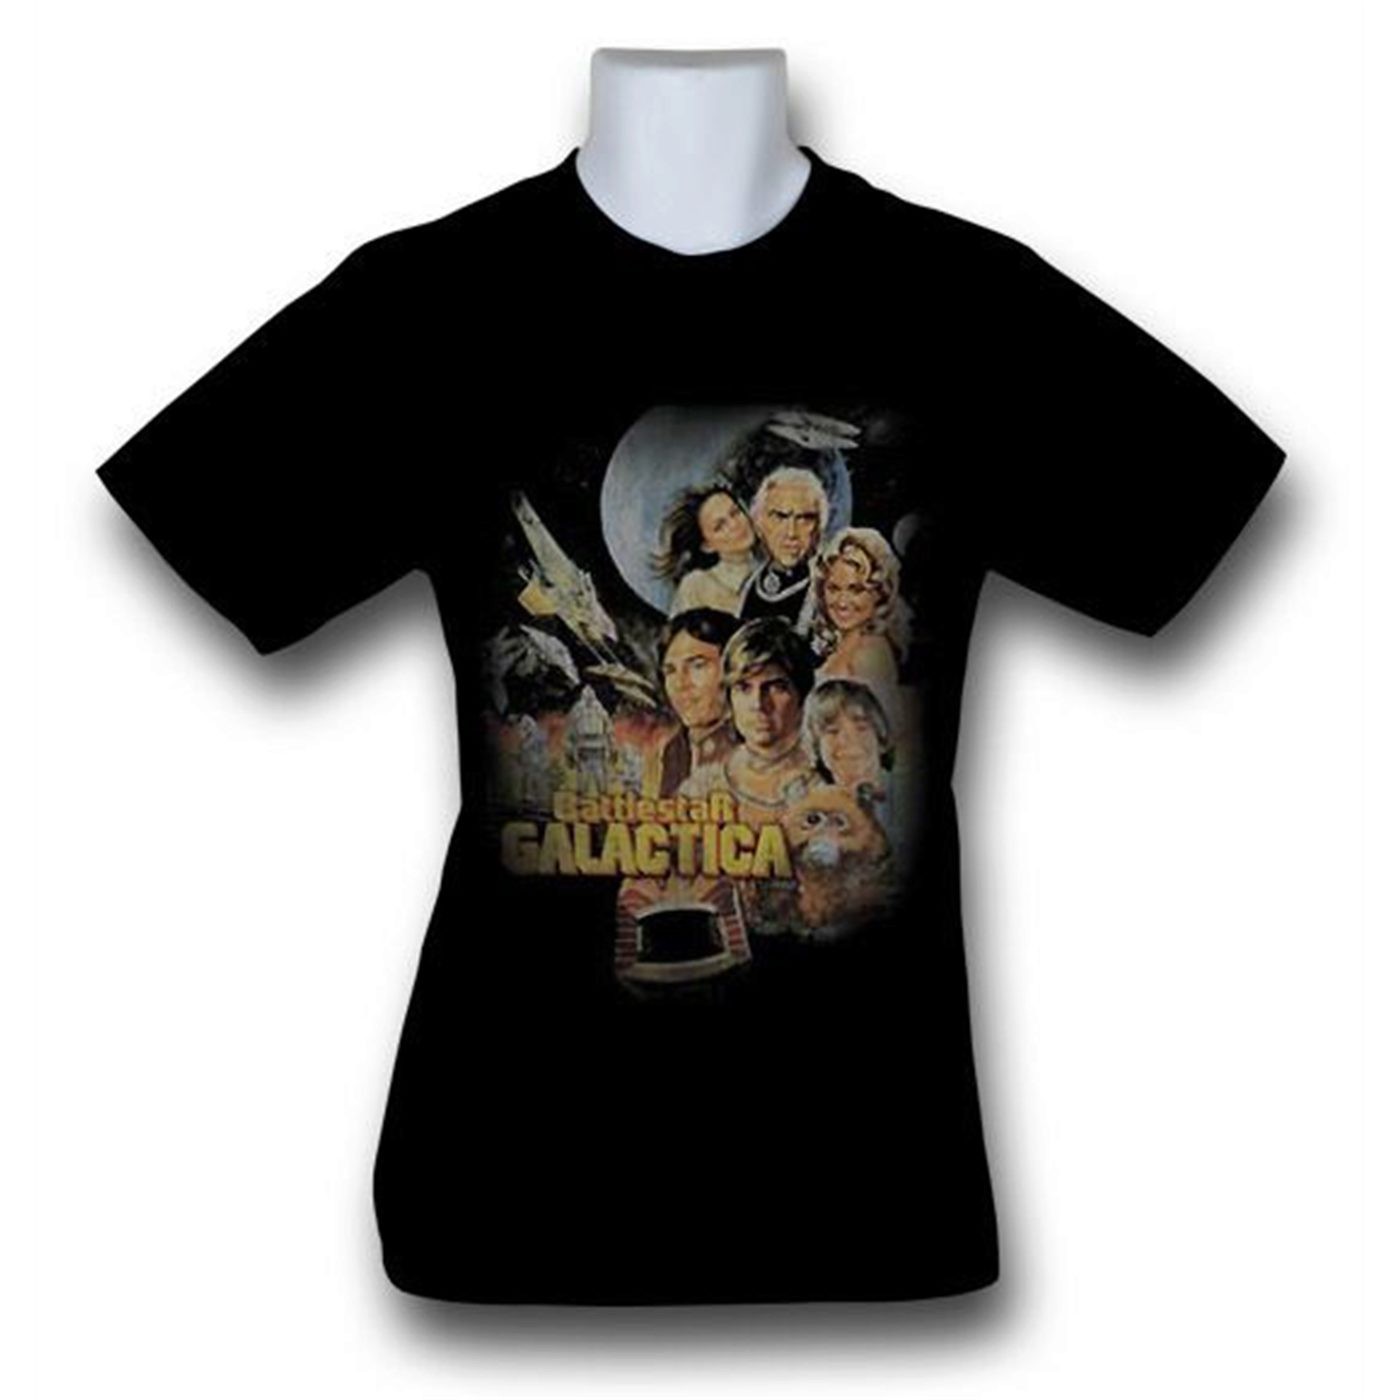 Battlestar Galactica Classic Poster T-Shirt